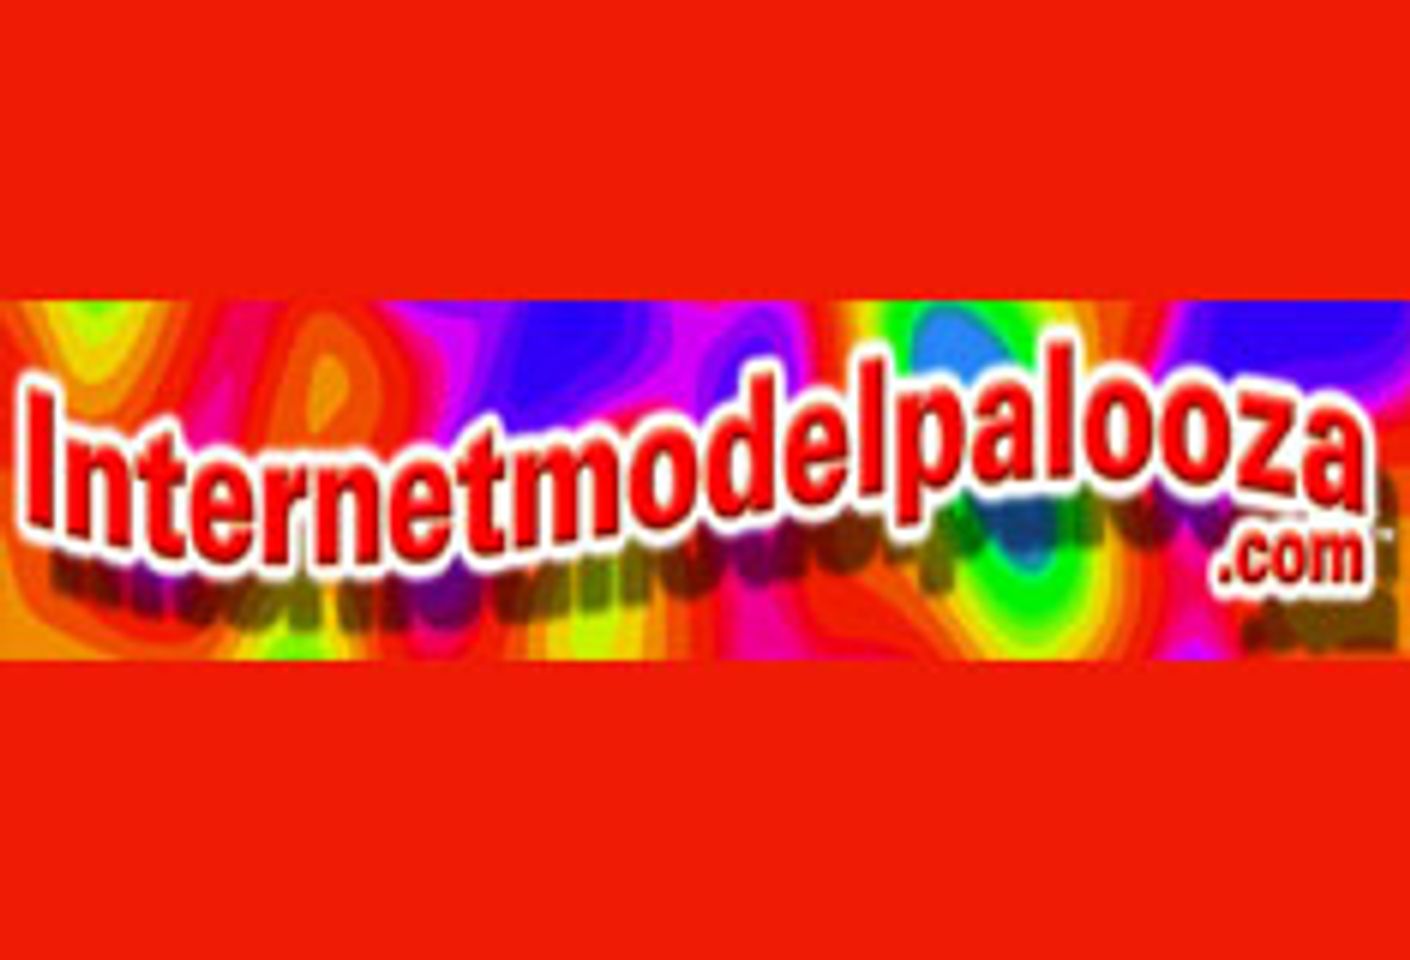 Internetmodelpalooza II Hits LA in July